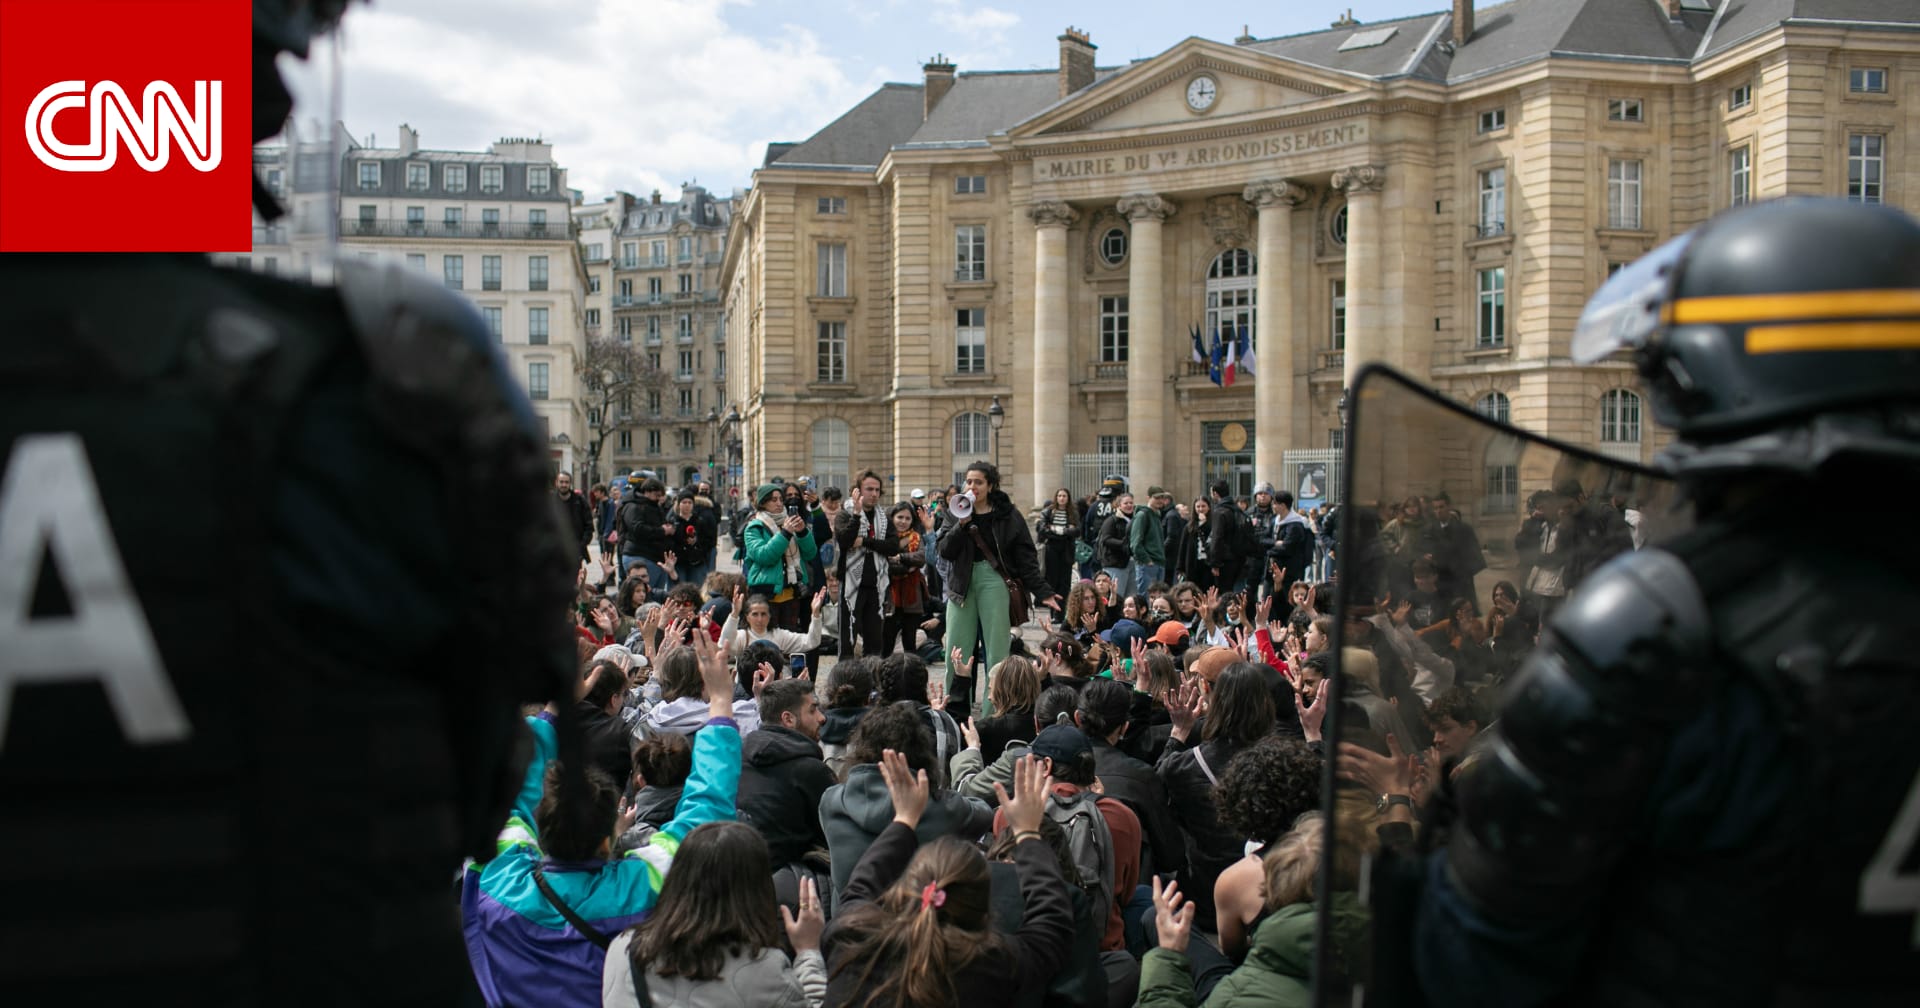 فرنسا.. شرطة باريس تفض احتجاجات مؤيدة للفلسطينيين في جامعة السوربون